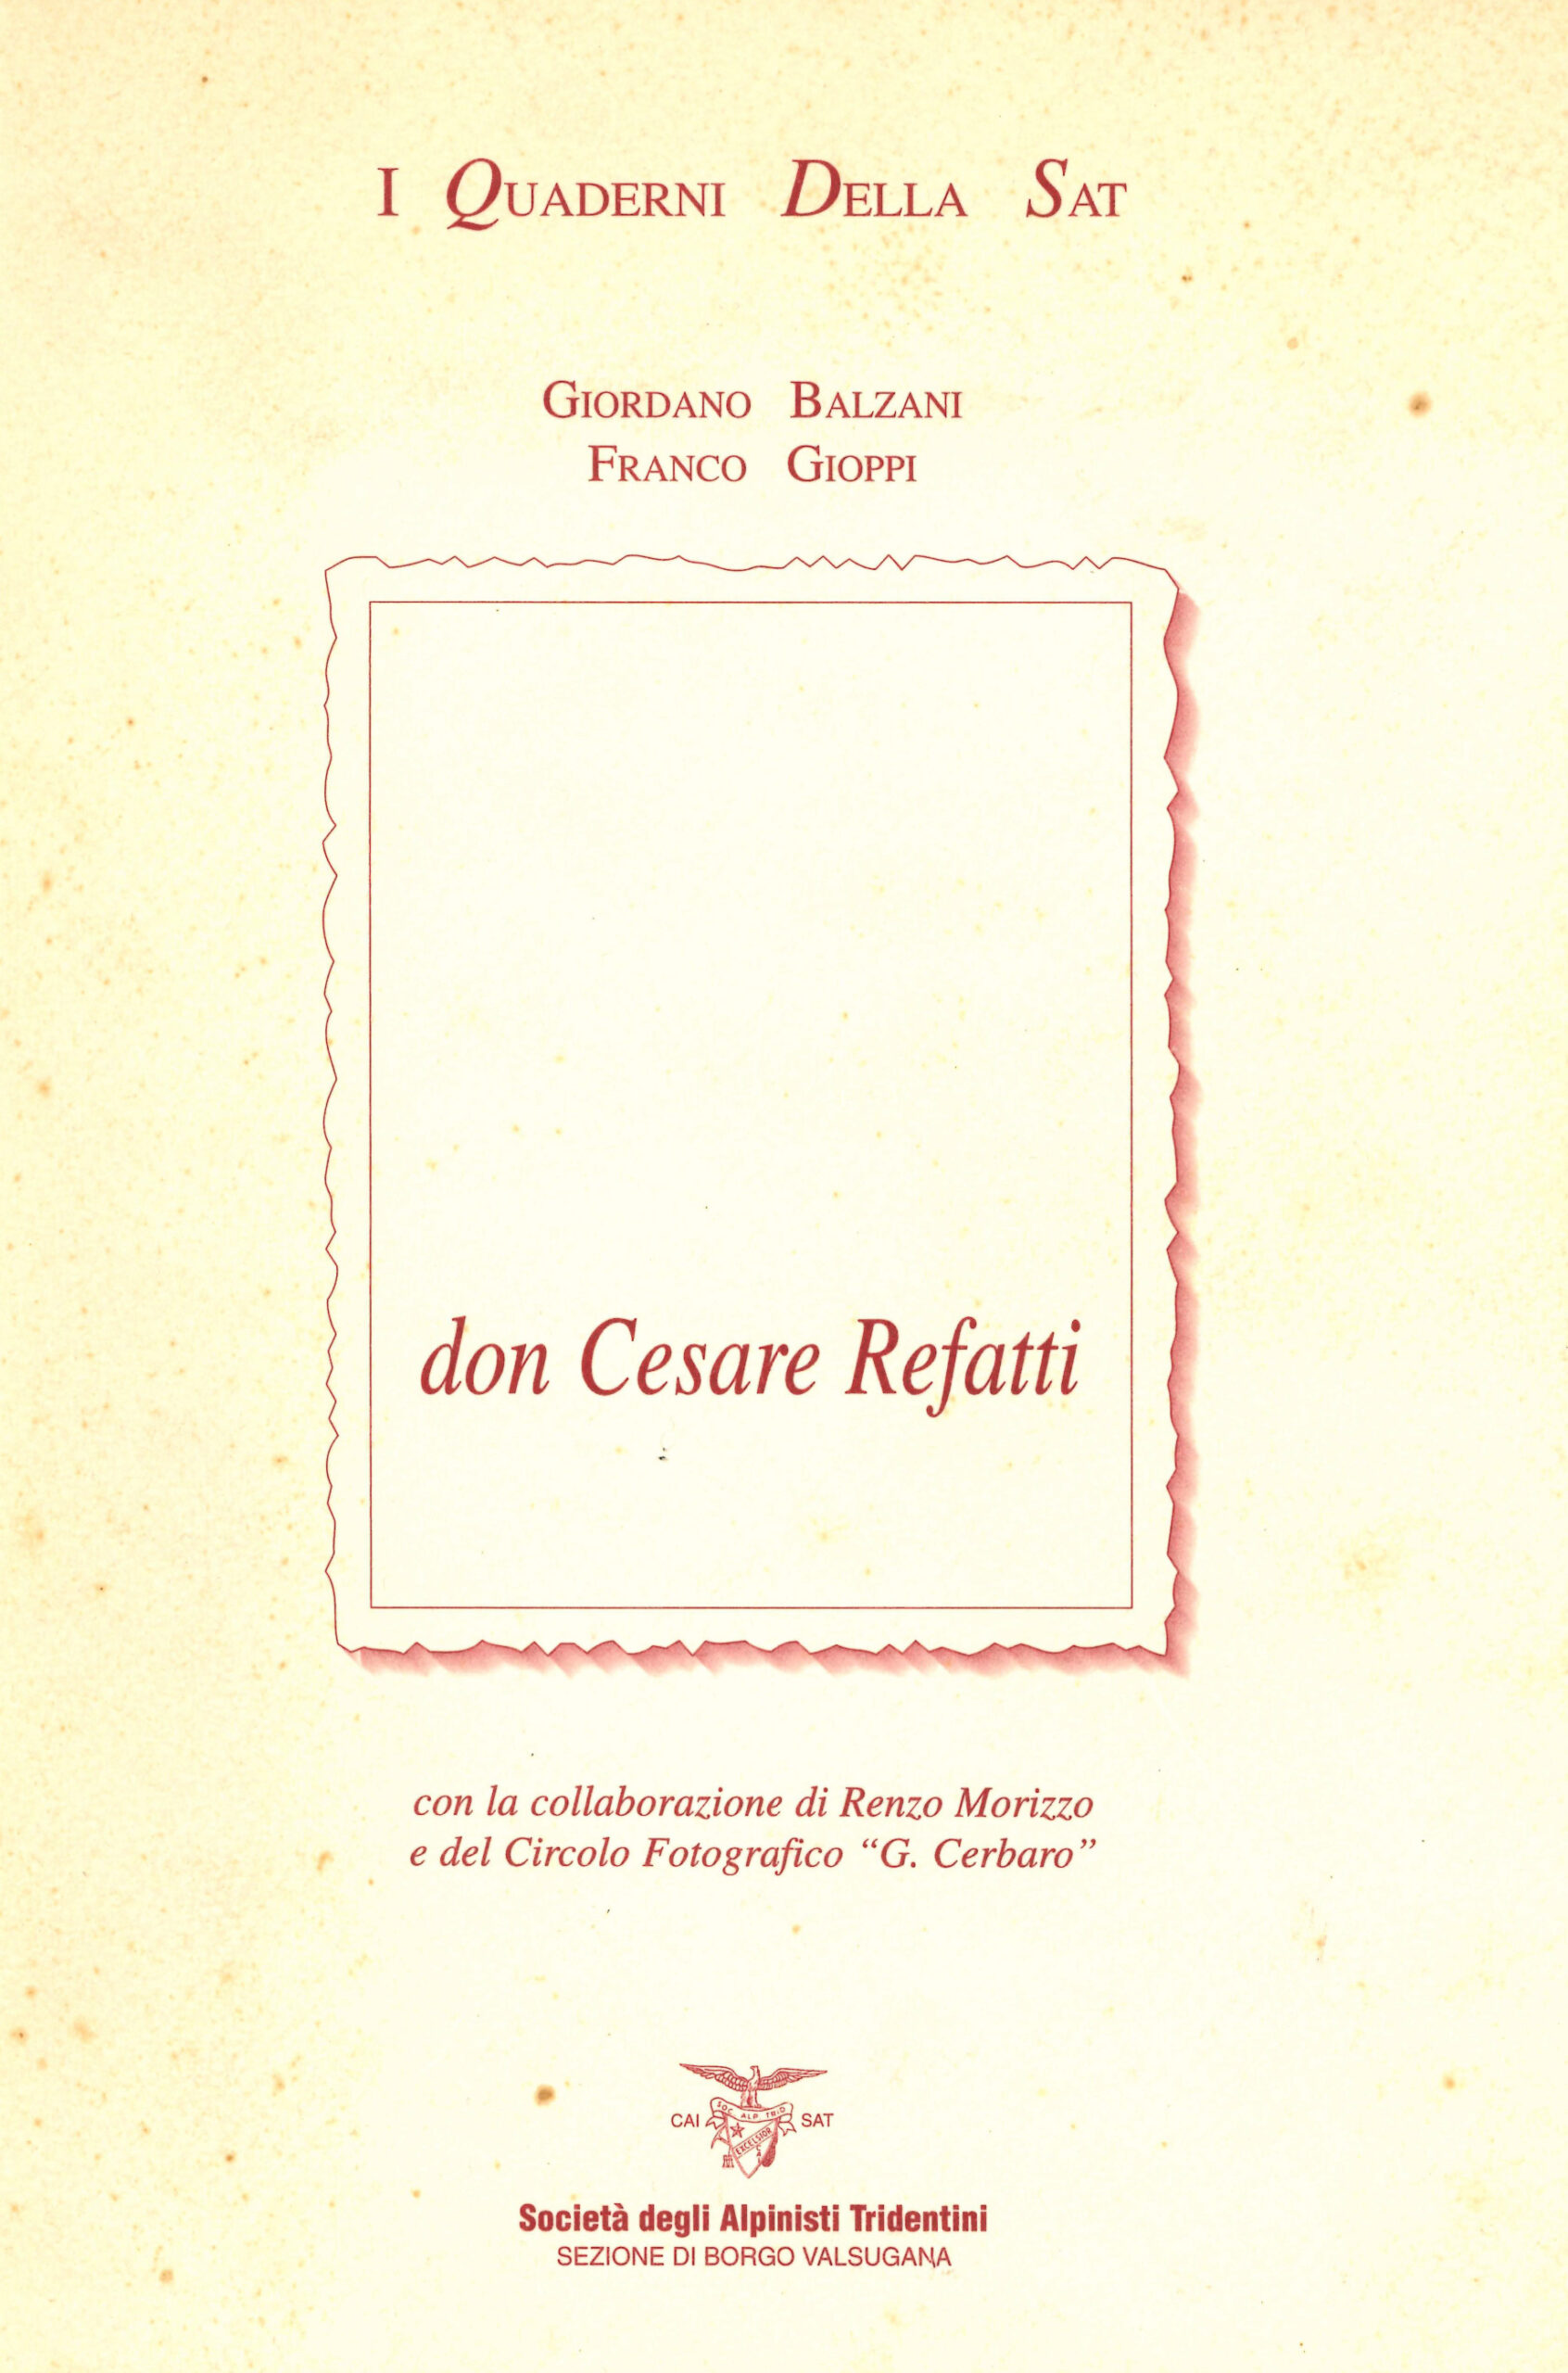 Don Cesare Refatti